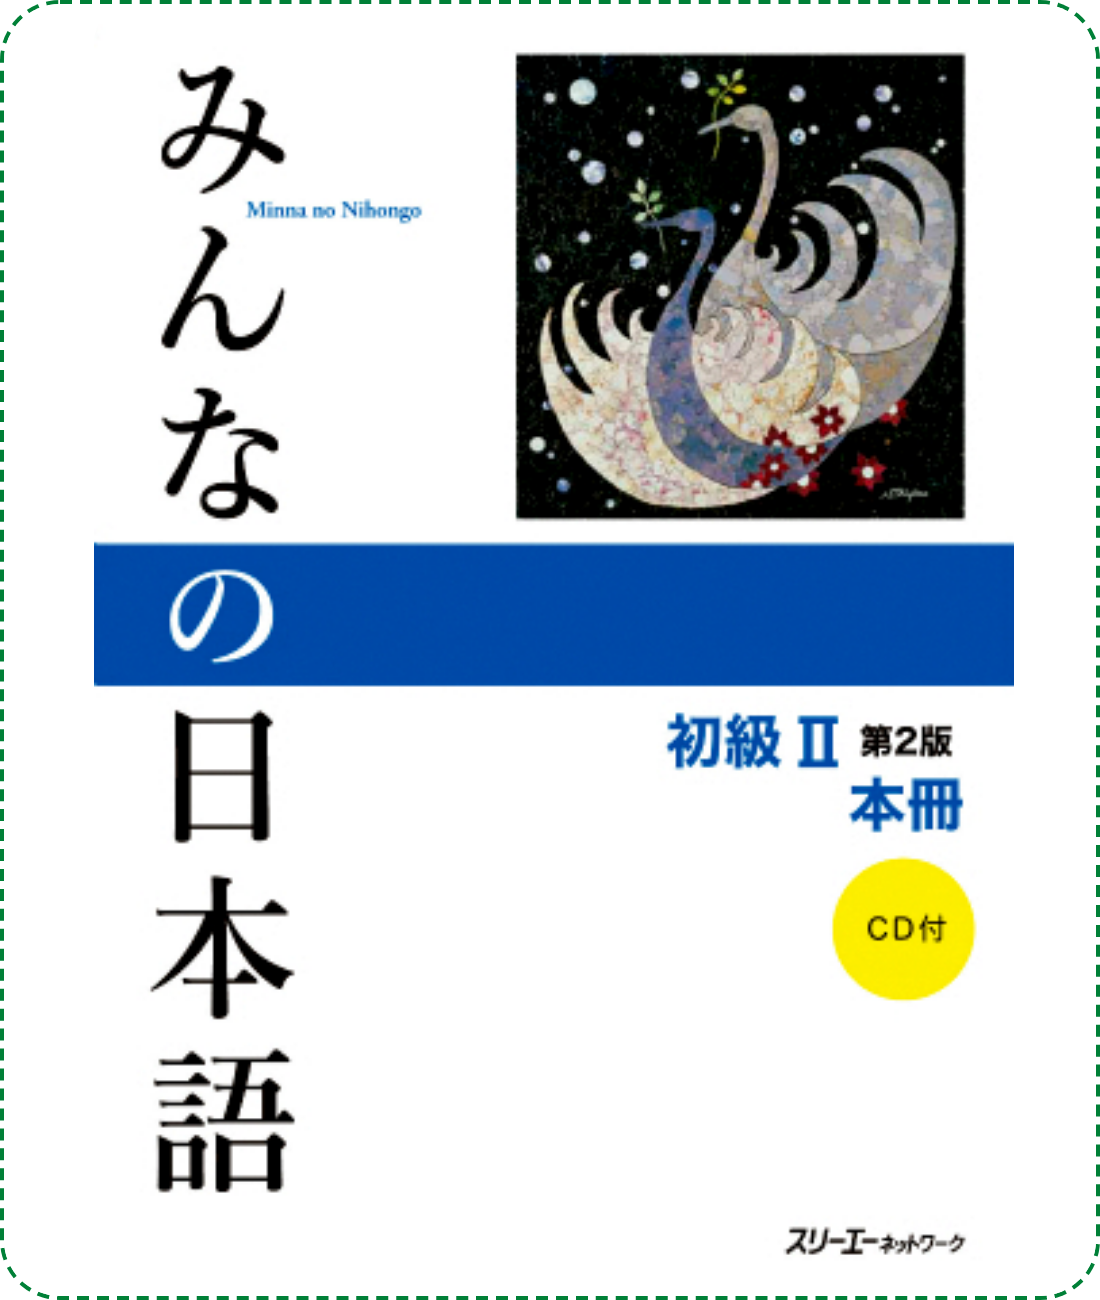 Giáo trình Minano Nihongo 2 - Quyển chính Honsatsu